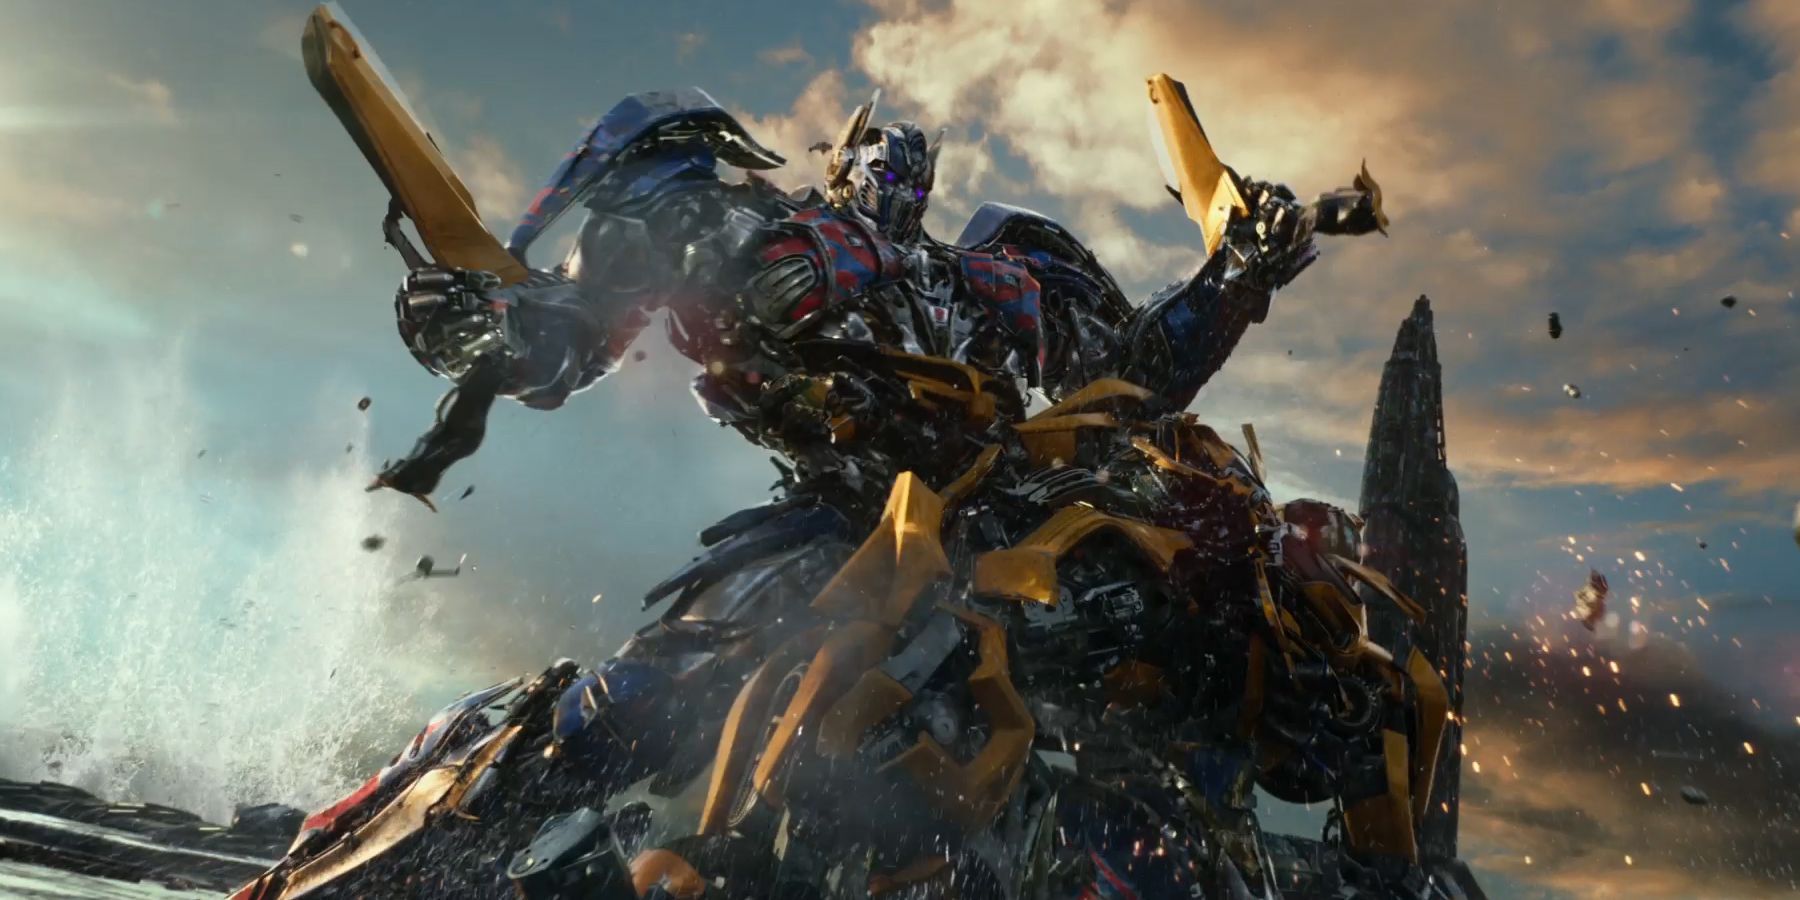 Transformers The Last Knight Final Trailer Breakdown